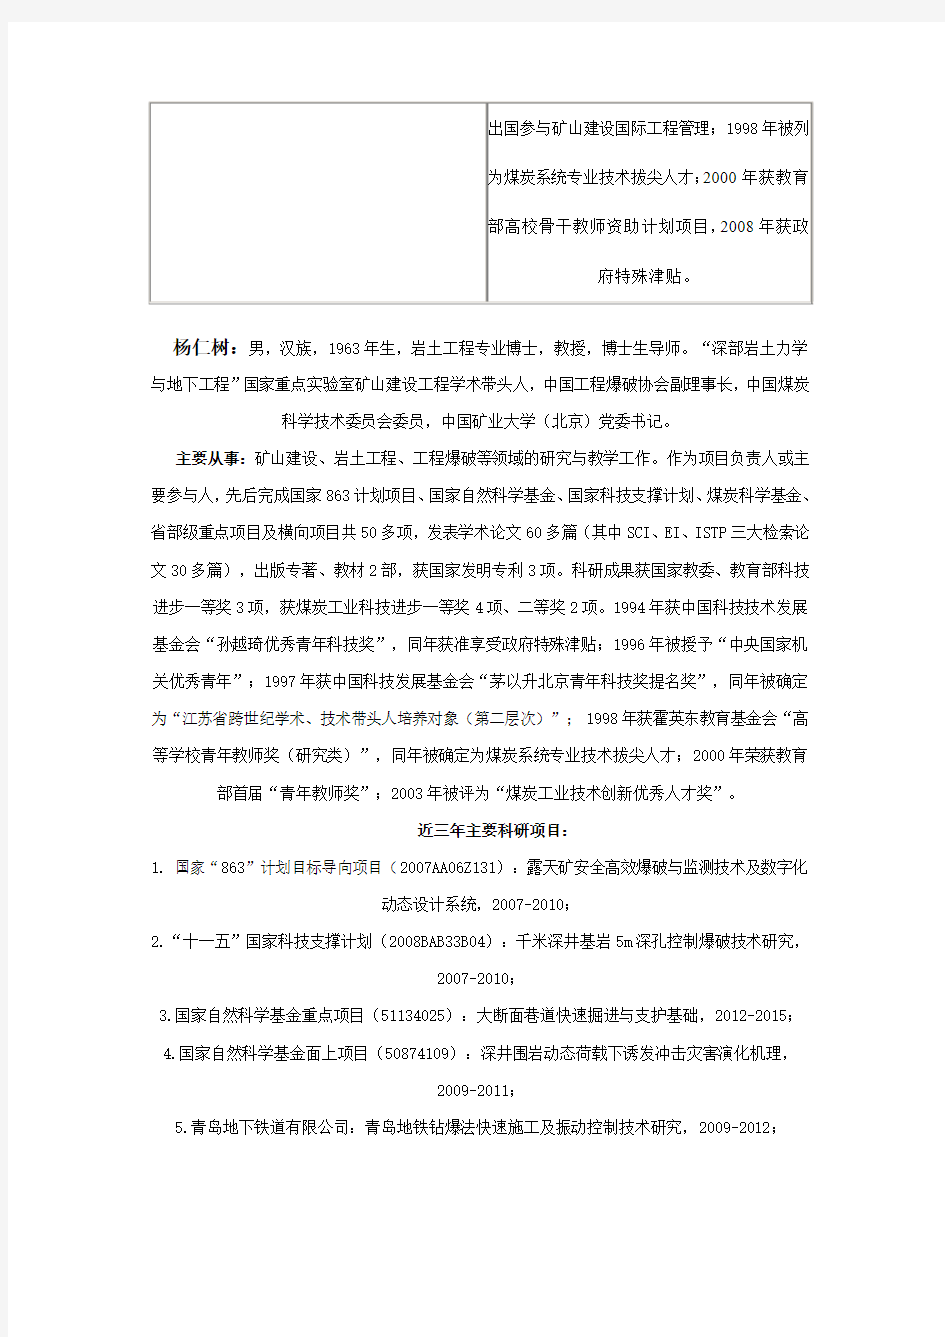 中国矿业大学(北京)力建学院导师信息